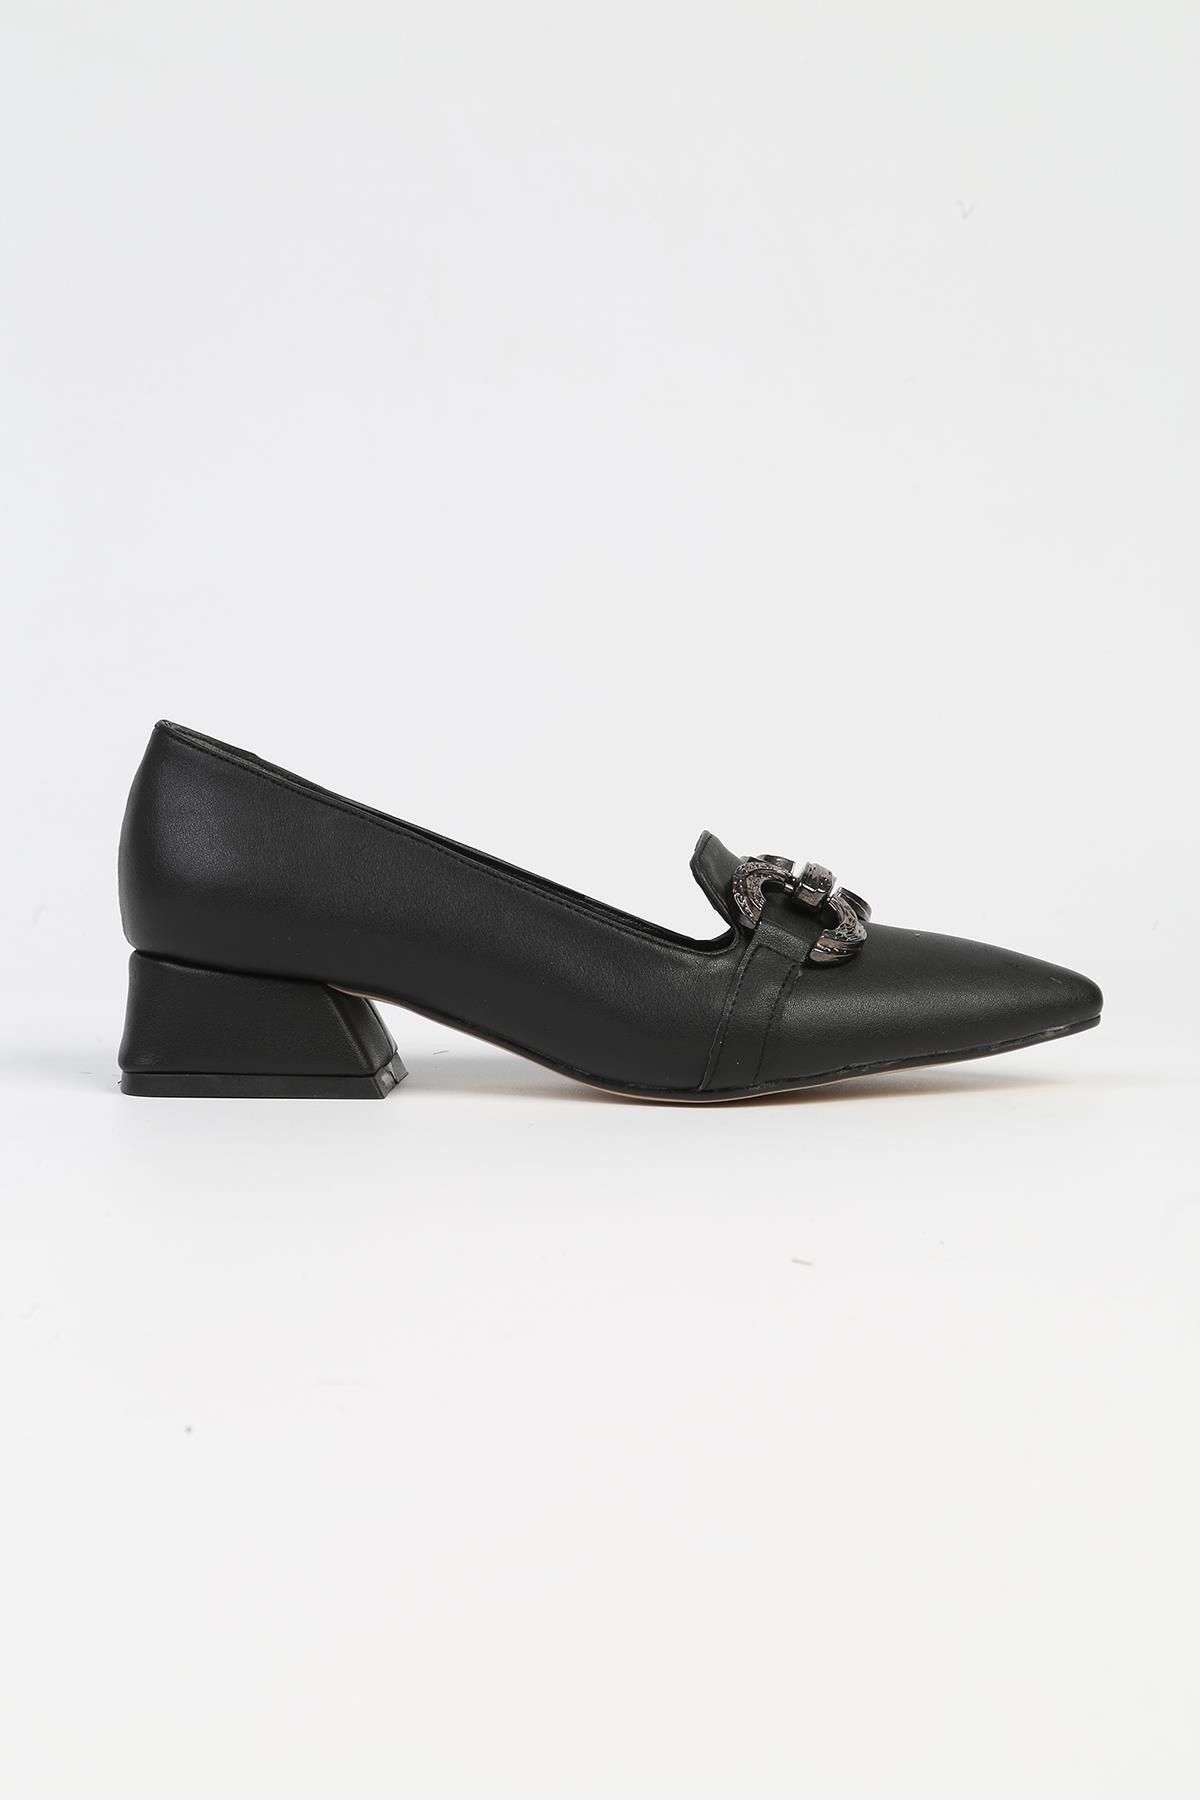 Pierre Cardin ® | PC-52568 - 3478 Siyah Cilt - Kadın Topuklu Ayakkabı